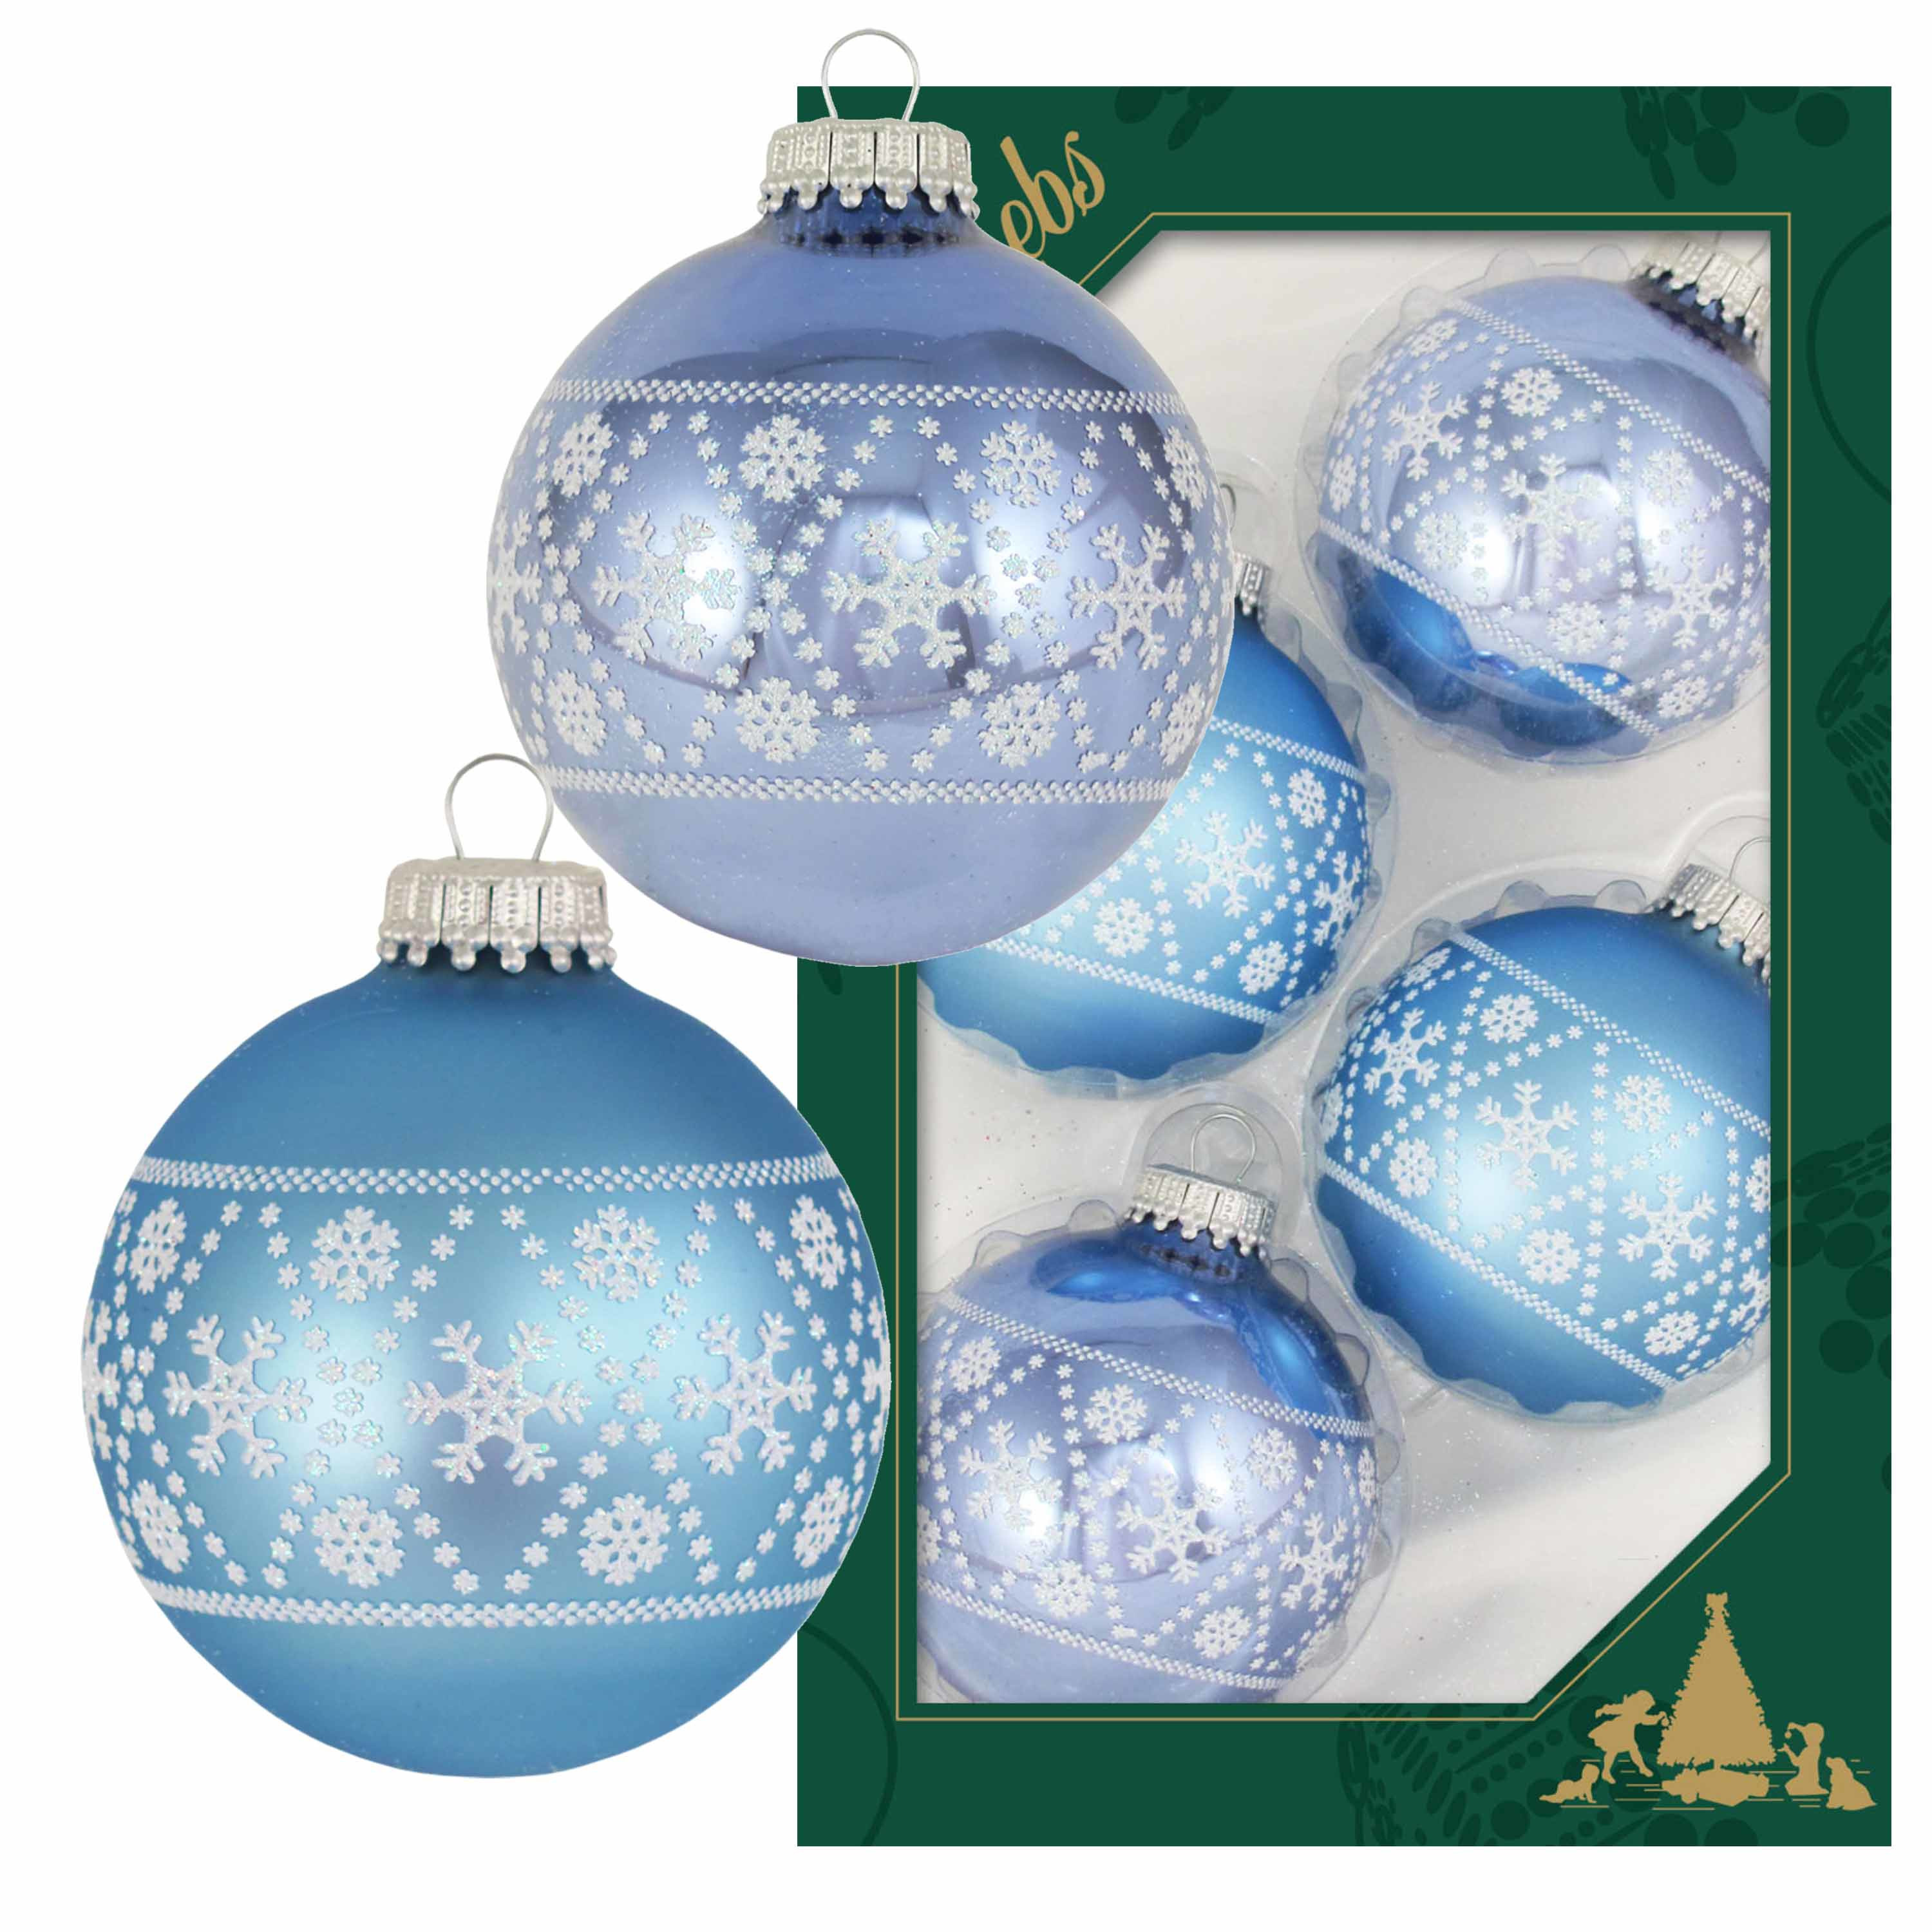 4x Luxe blauwe glazen kerstballen met witte sneeuwvlokken 7 cm